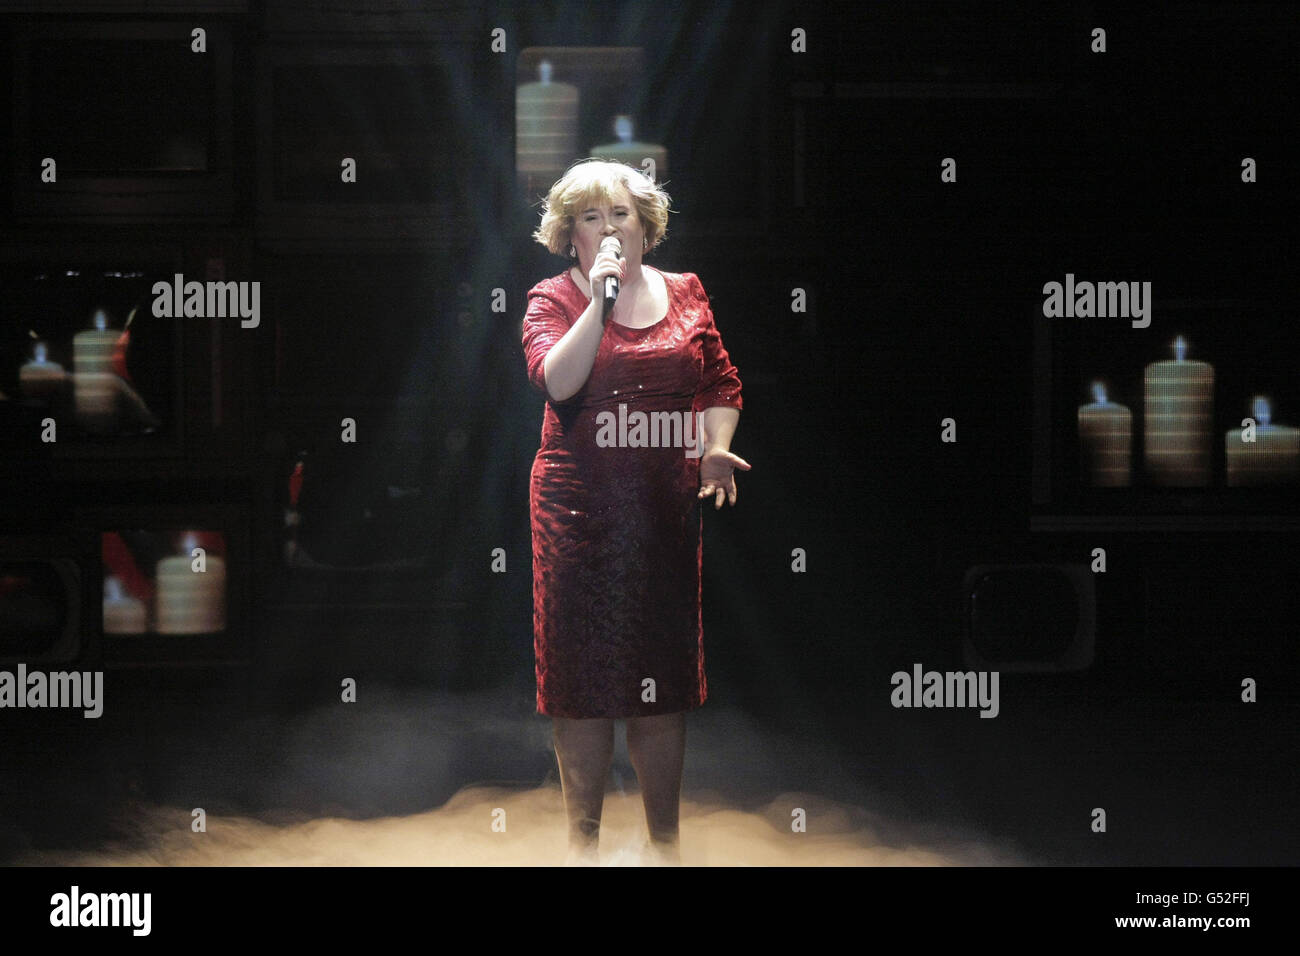 Susan Boyle apparaît sur scène à la fin de la soirée d'ouverture de la comédie musicale Susan Boyle « J'ai rêvé d'un rêve » au Théâtre Royal de Newcastle. Banque D'Images